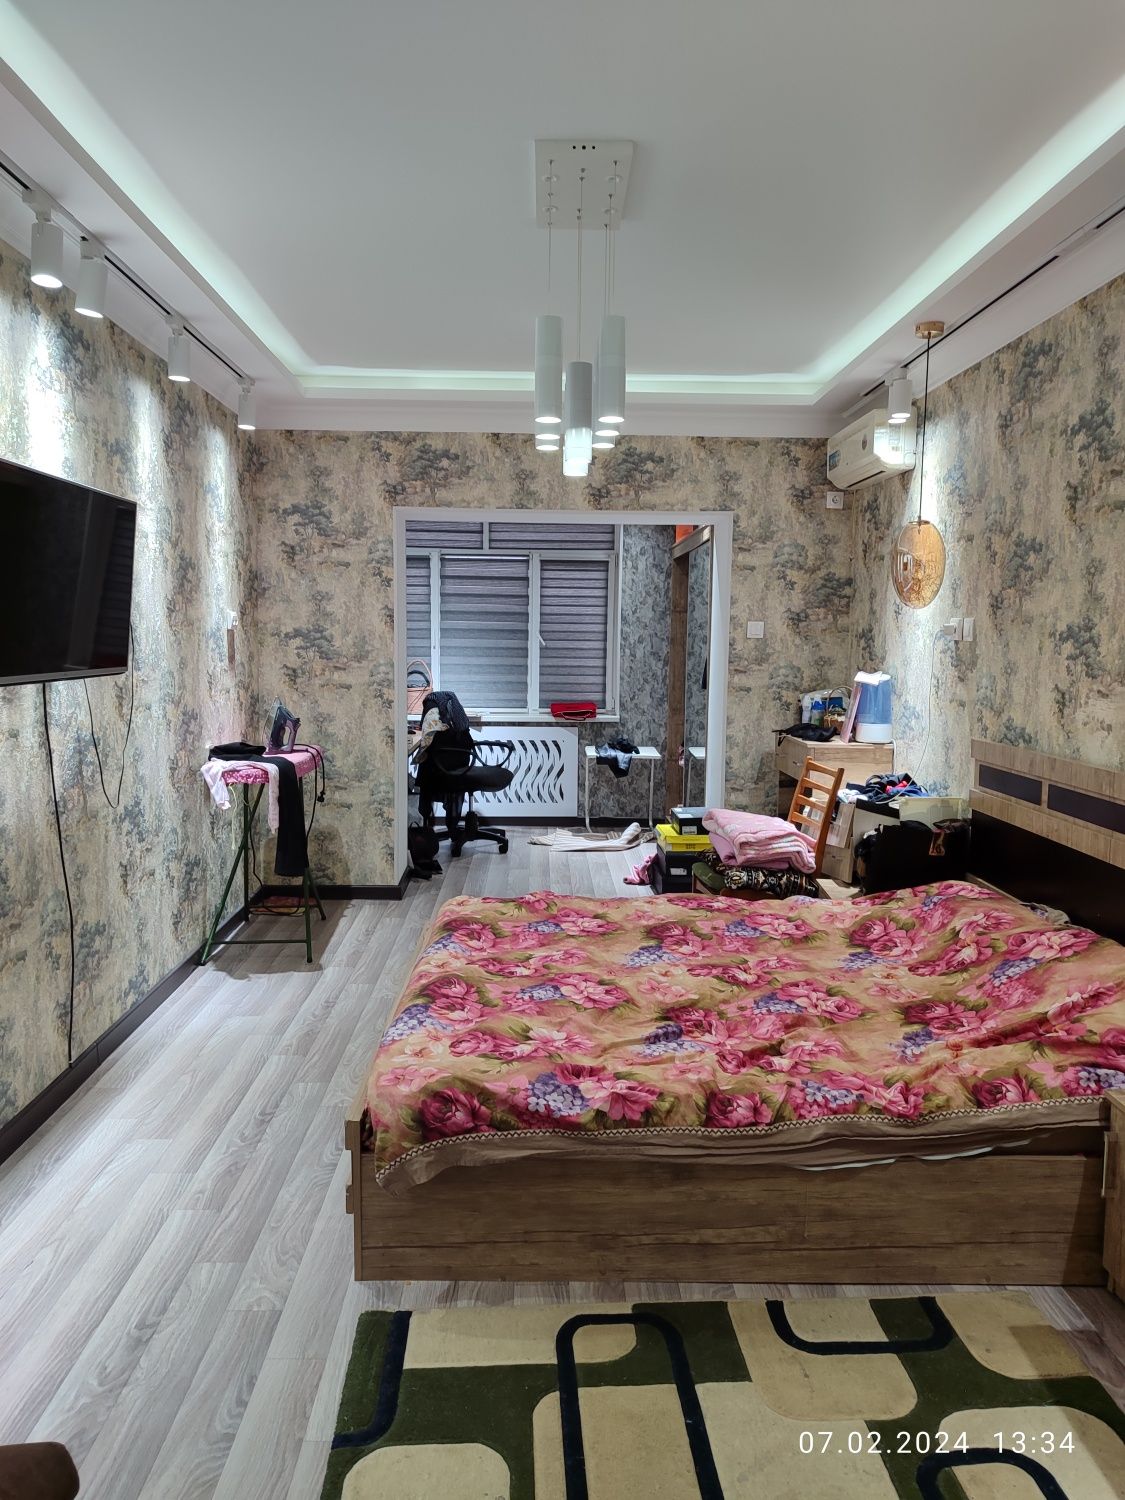 Срочно продается своя квартира 4х комнатная на ул.Саракулька